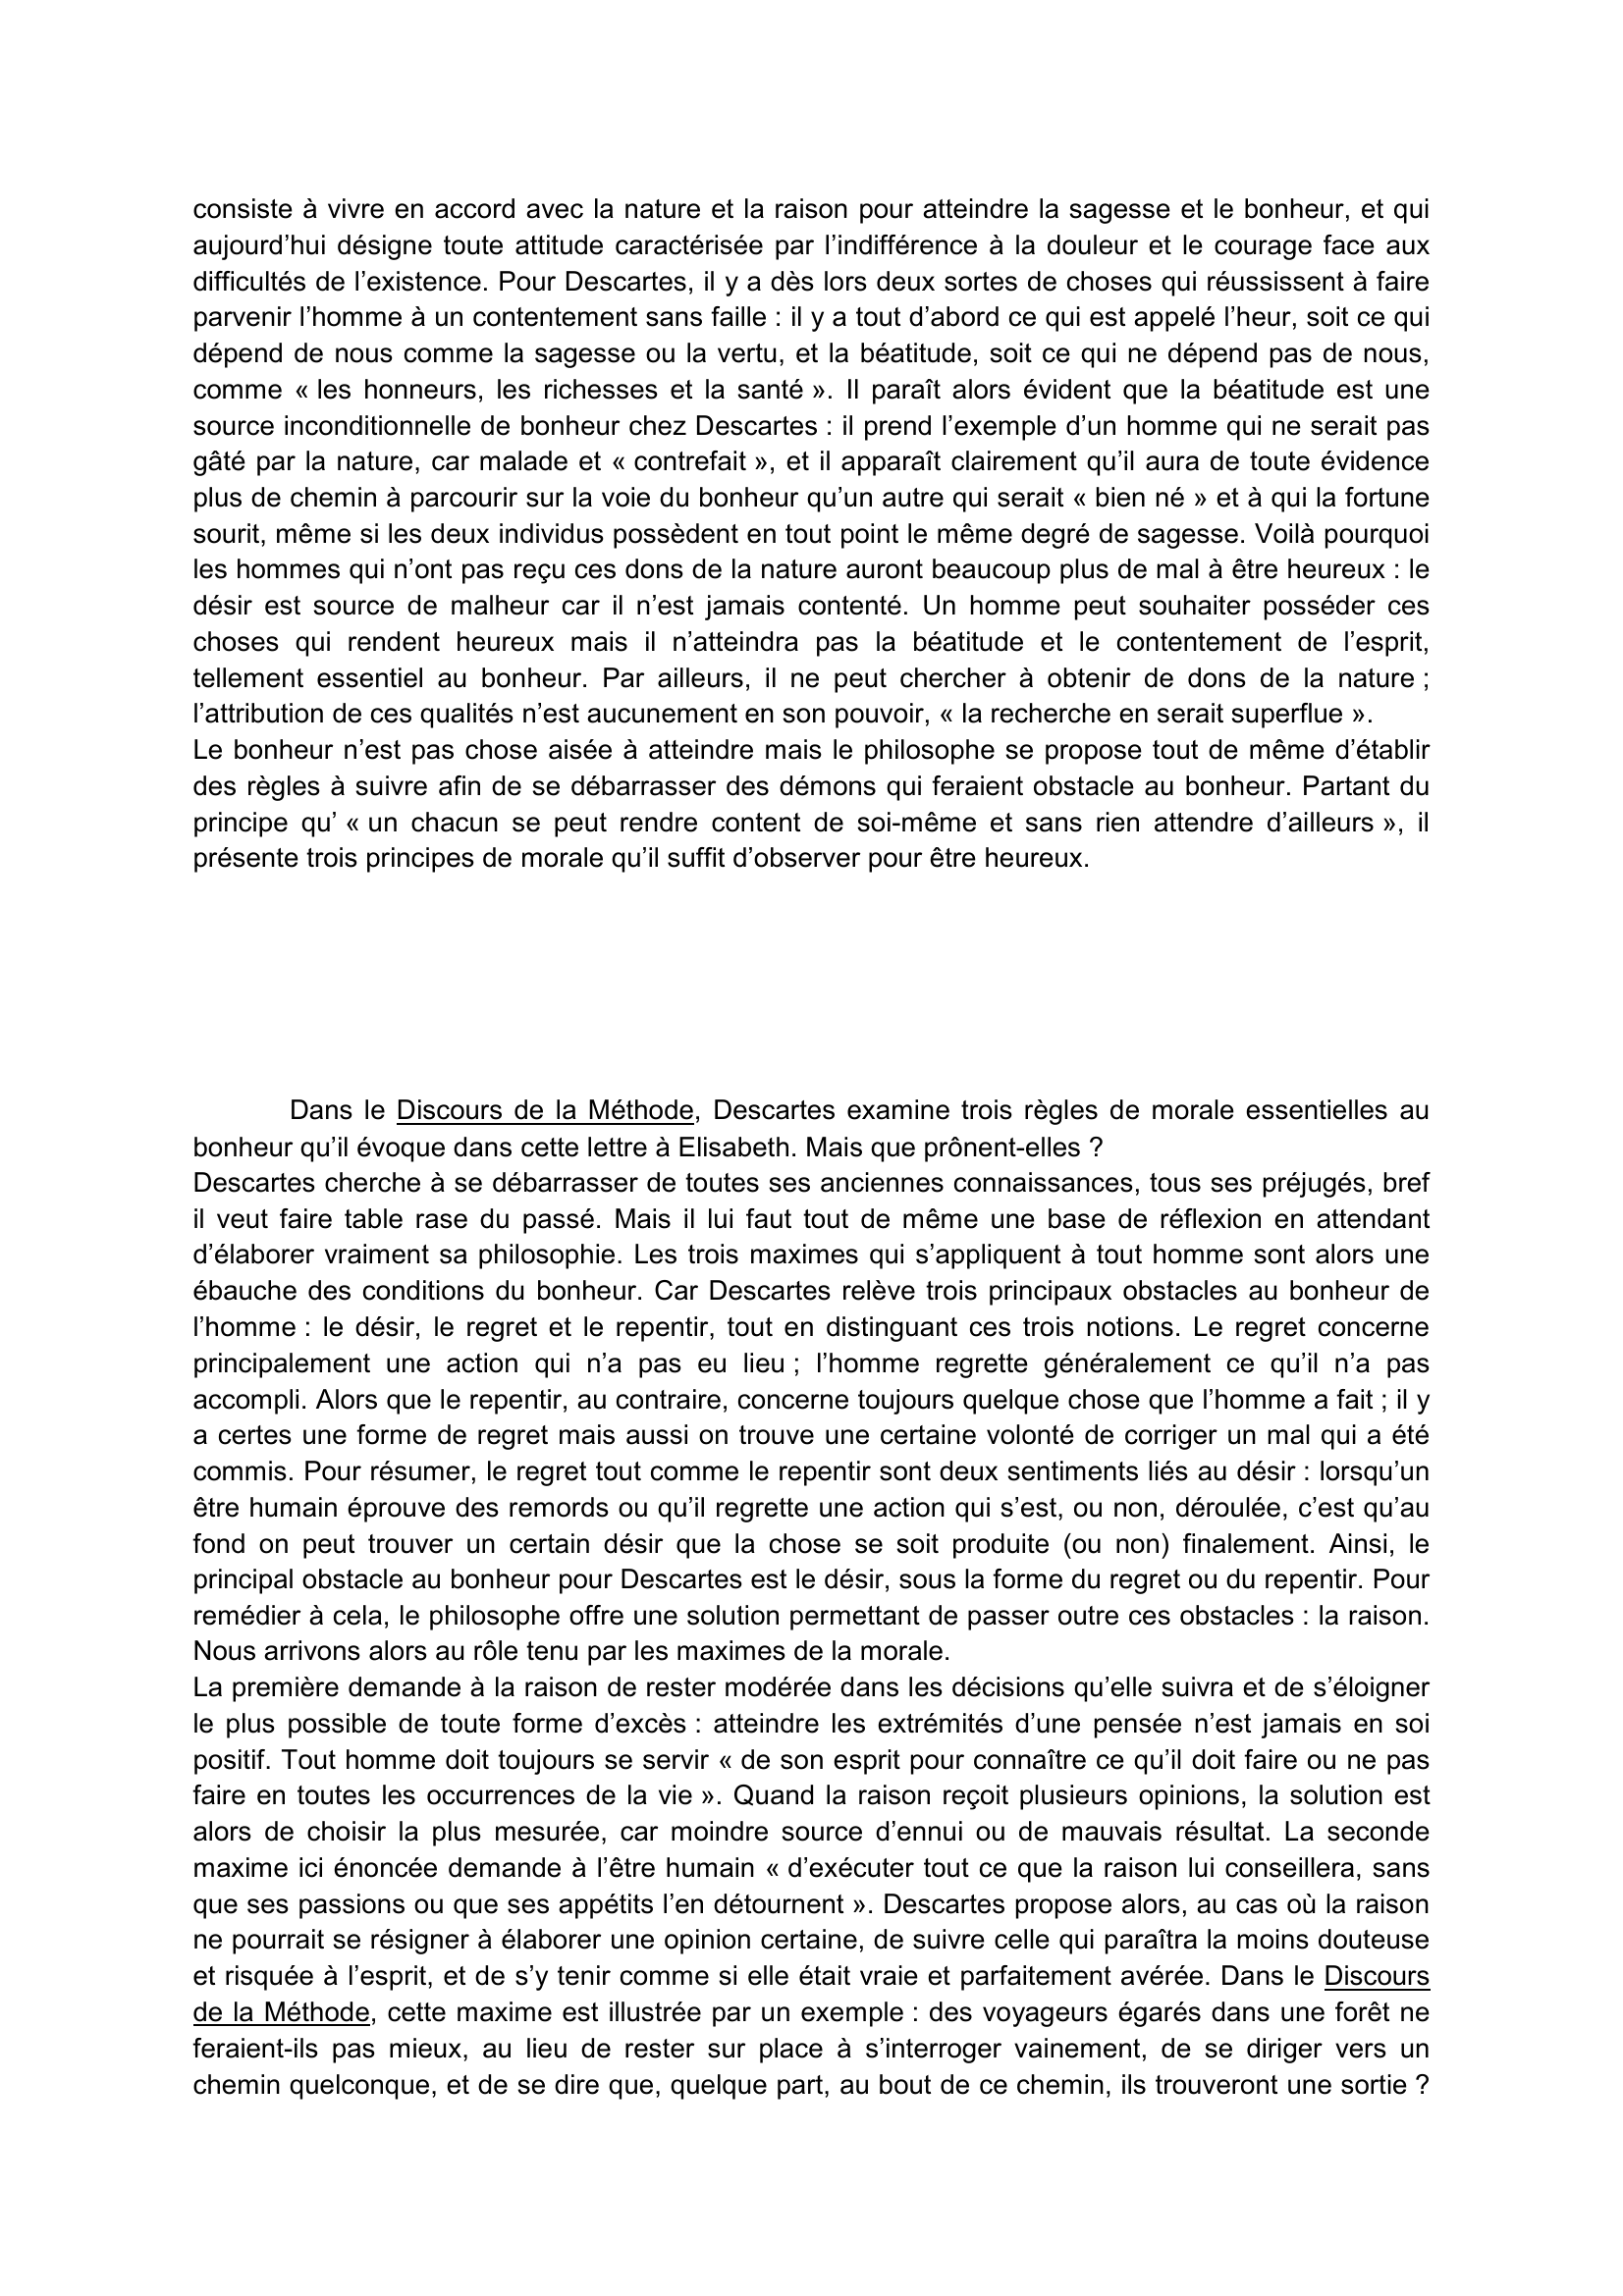 Prévisualisation du document Lettre de Descartes à Elisabeth – Egmond, 4 août 1645 (commentaire)